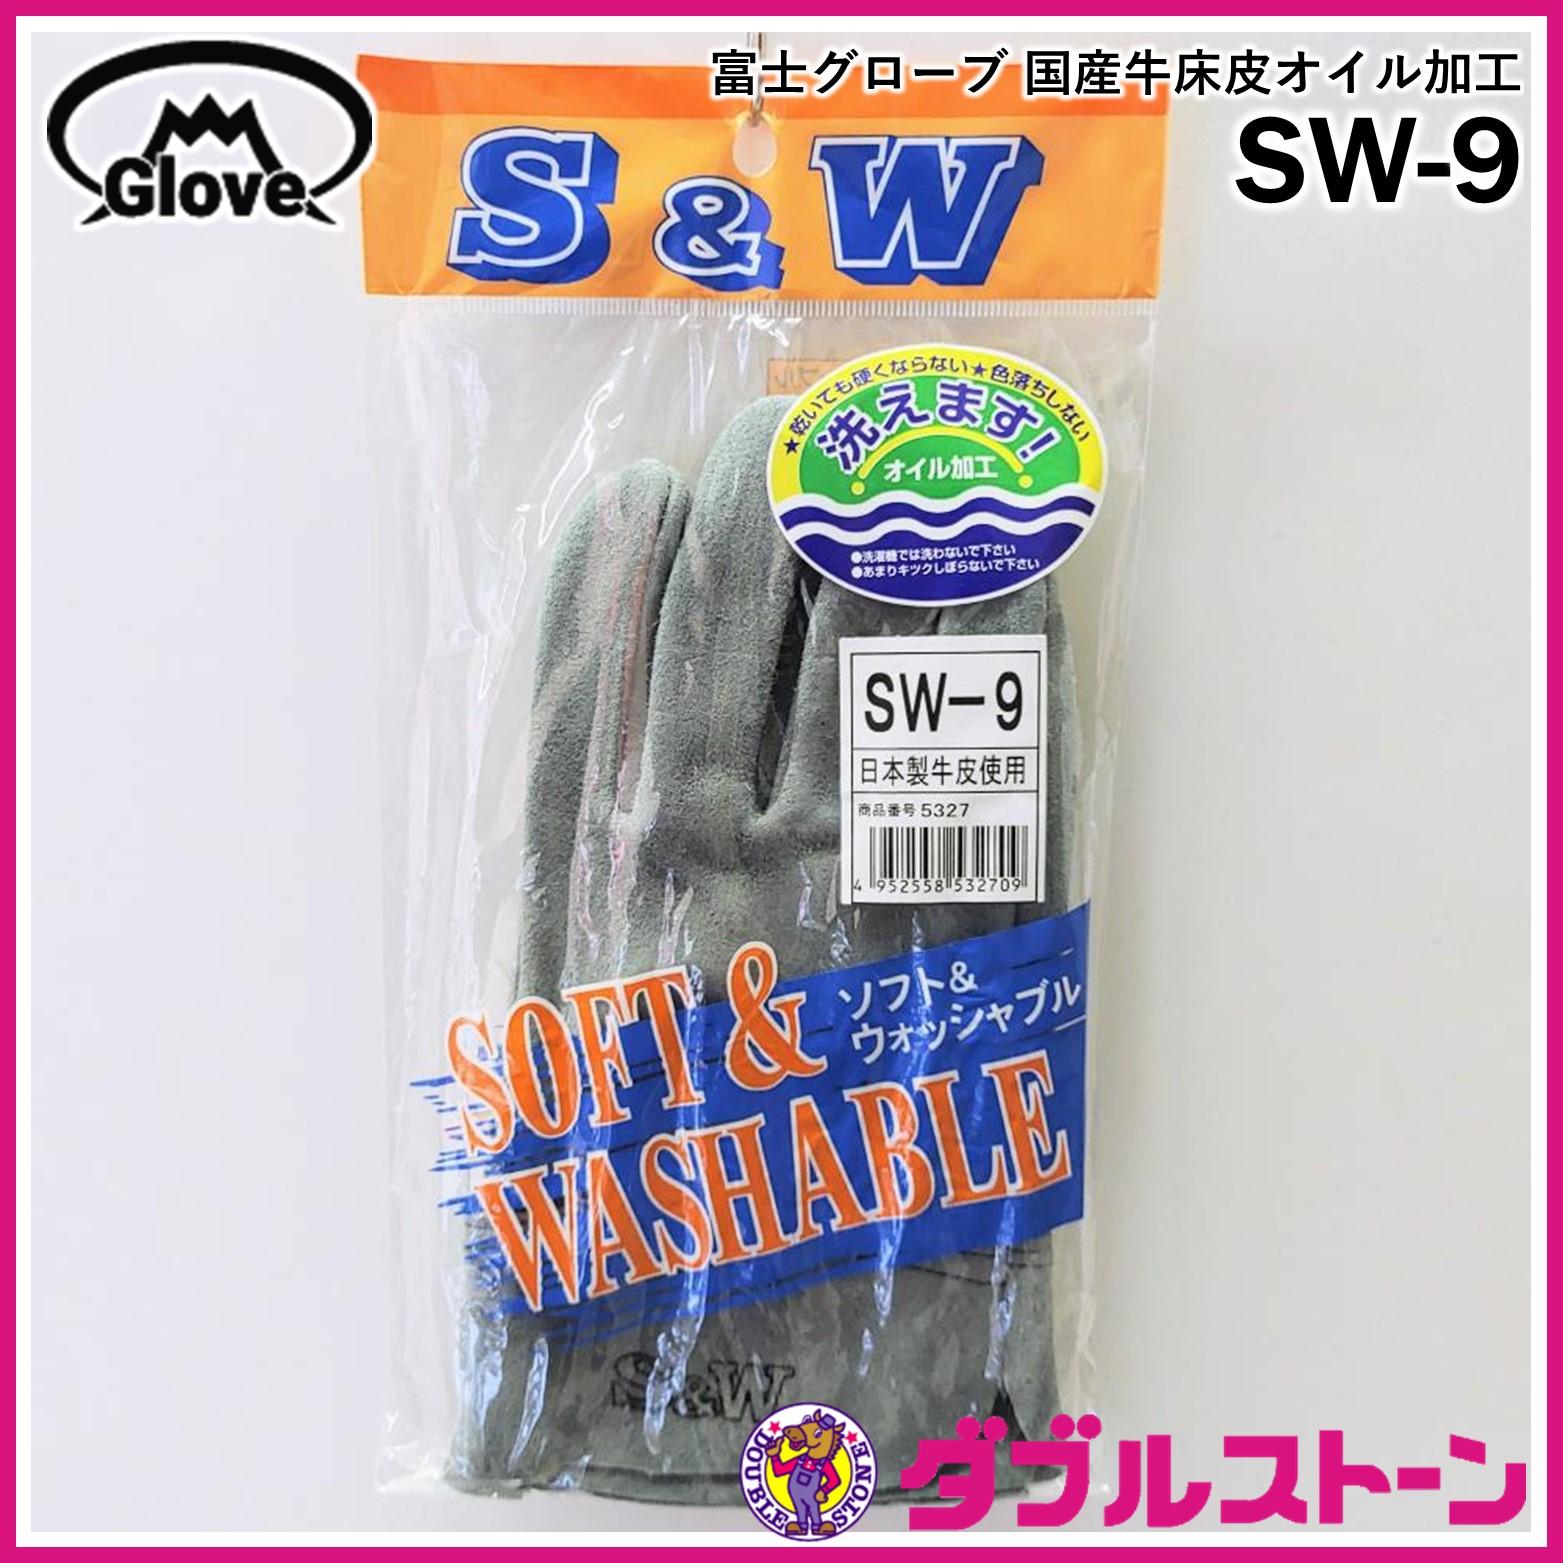 低価格の 富士グローブ SW-32B SWオイル皮手袋 作業用 3双組 LLサイズ